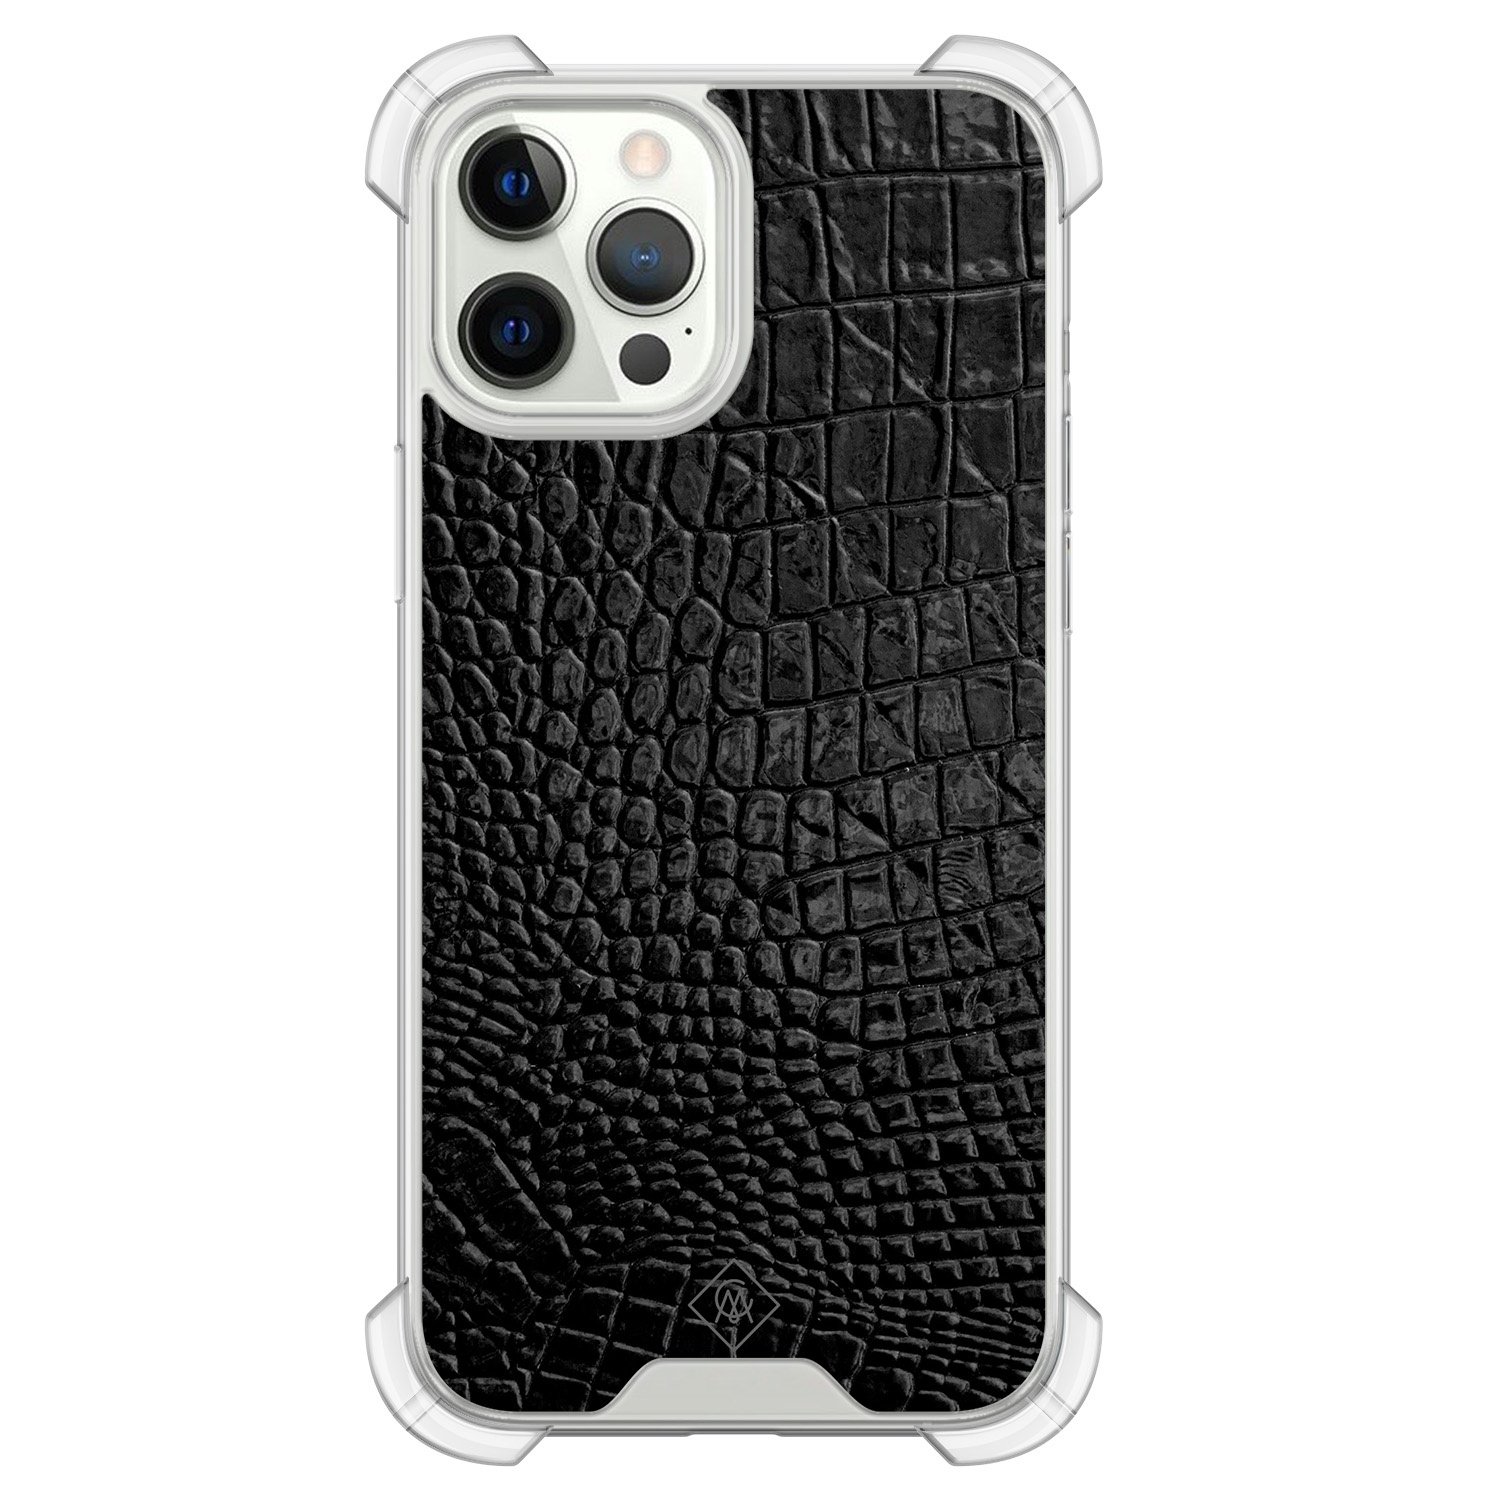 iPhone 12 (Pro) siliconen shockproof hoesje - Croco zwart